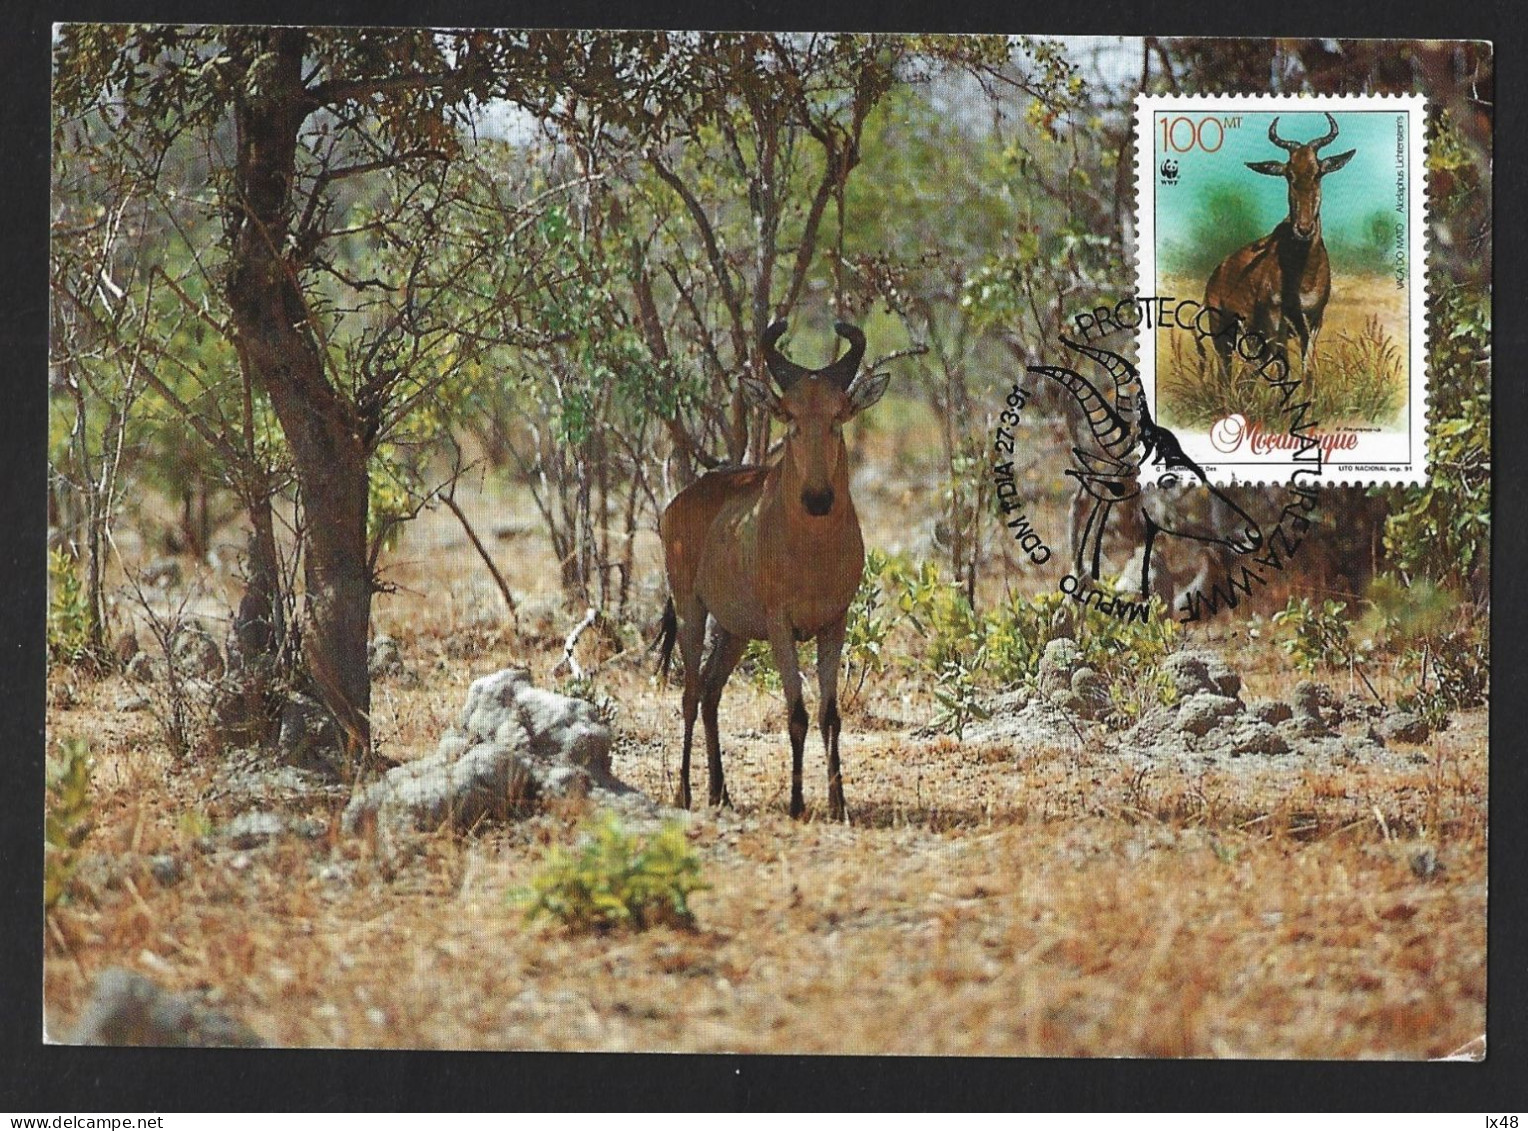 Protection Of Nature And The Environment. Gazelle. Wild Cow. Moose. Alcelaphus Lichtensteins. Gazelle. Wilde Kuh. Elch. - Protección Del Medio Ambiente Y Del Clima